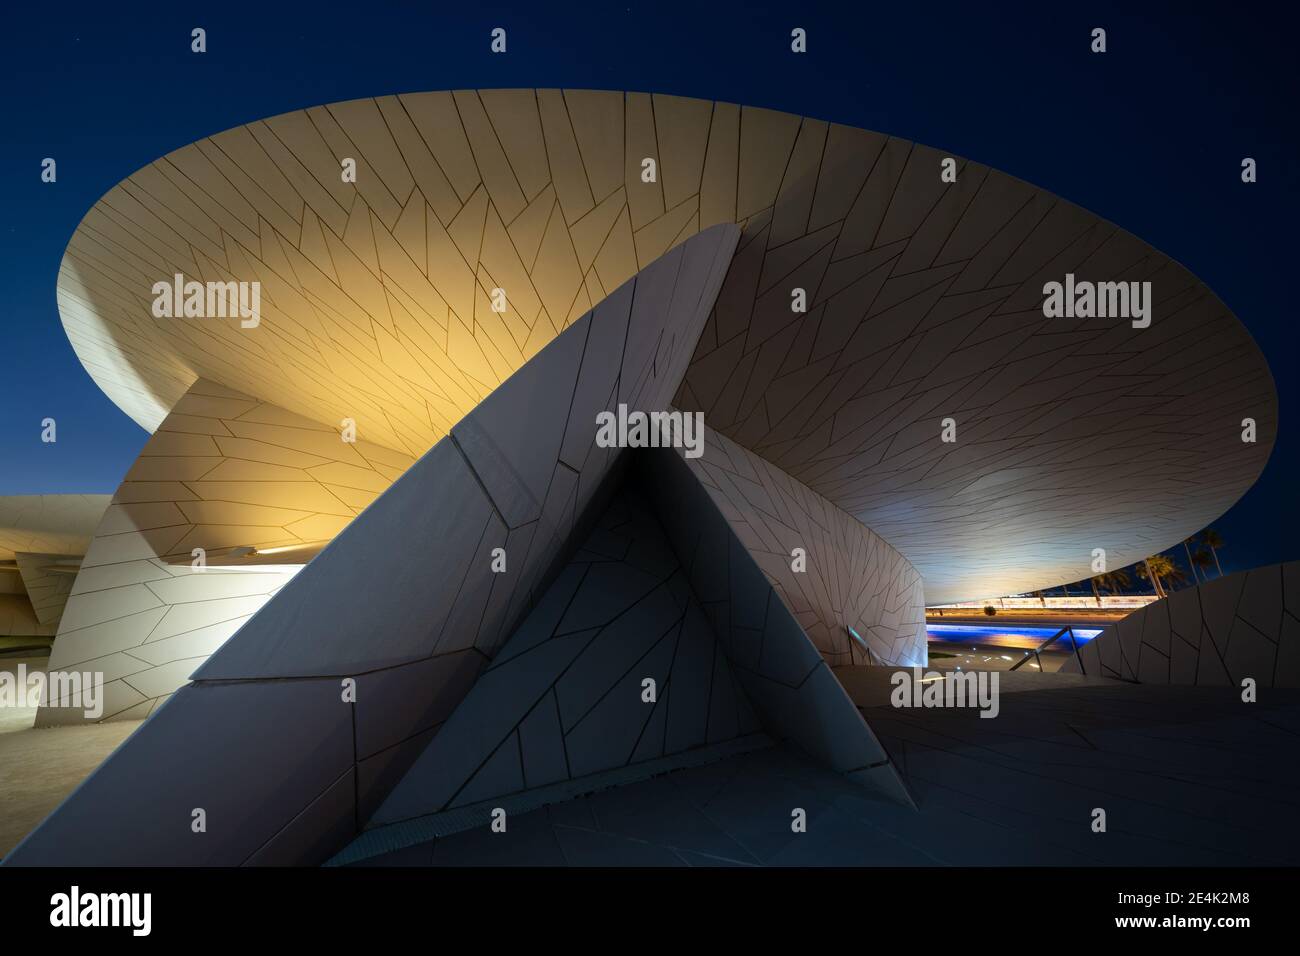 Bâtiment du Musée national du Qatar - conçu par un architecte français Jean nouvel et inspiré par la rose du désert local Banque D'Images